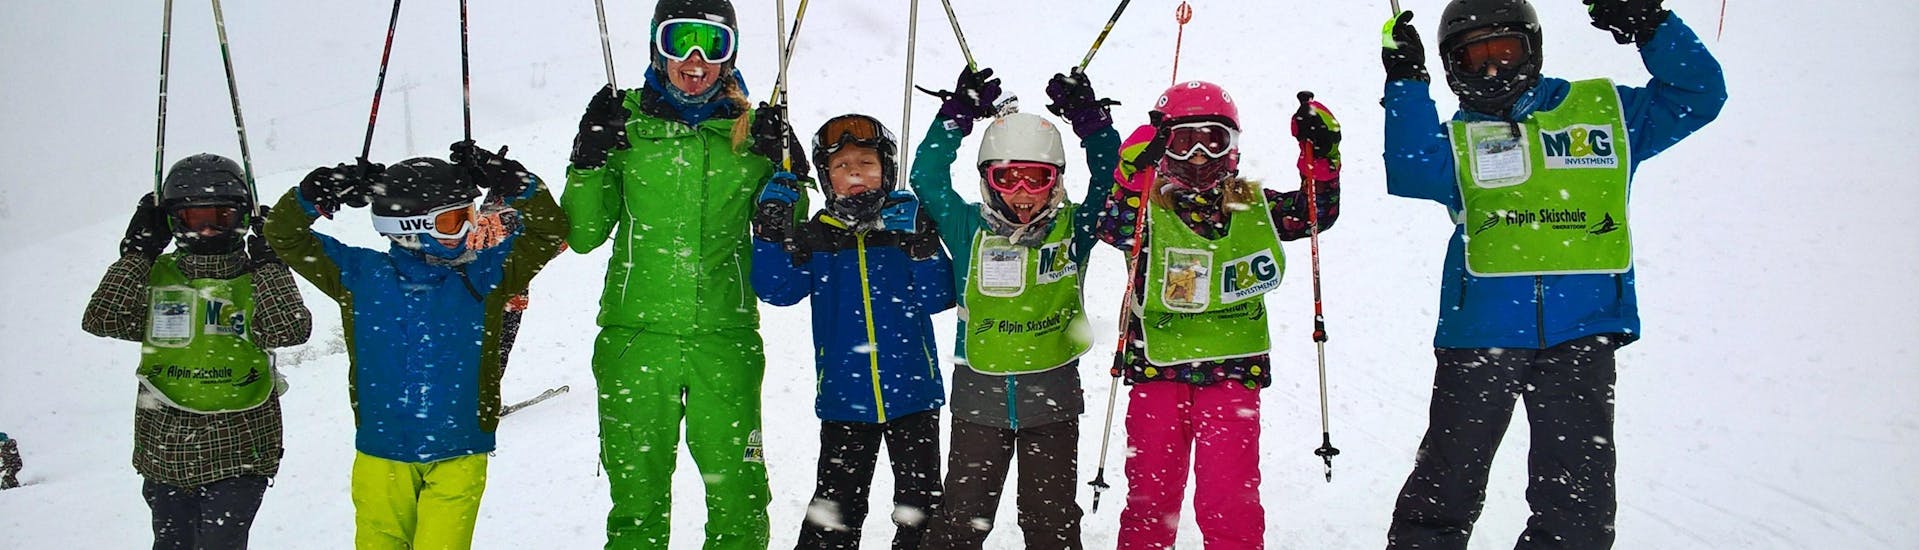 Un groupe d'enfants heureux pendant les cours de ski pour enfants (9-16 ans) - Expérimentés, avec leur moniteur de ski de l'école de ski Alpin Skischule Oberstdorf.